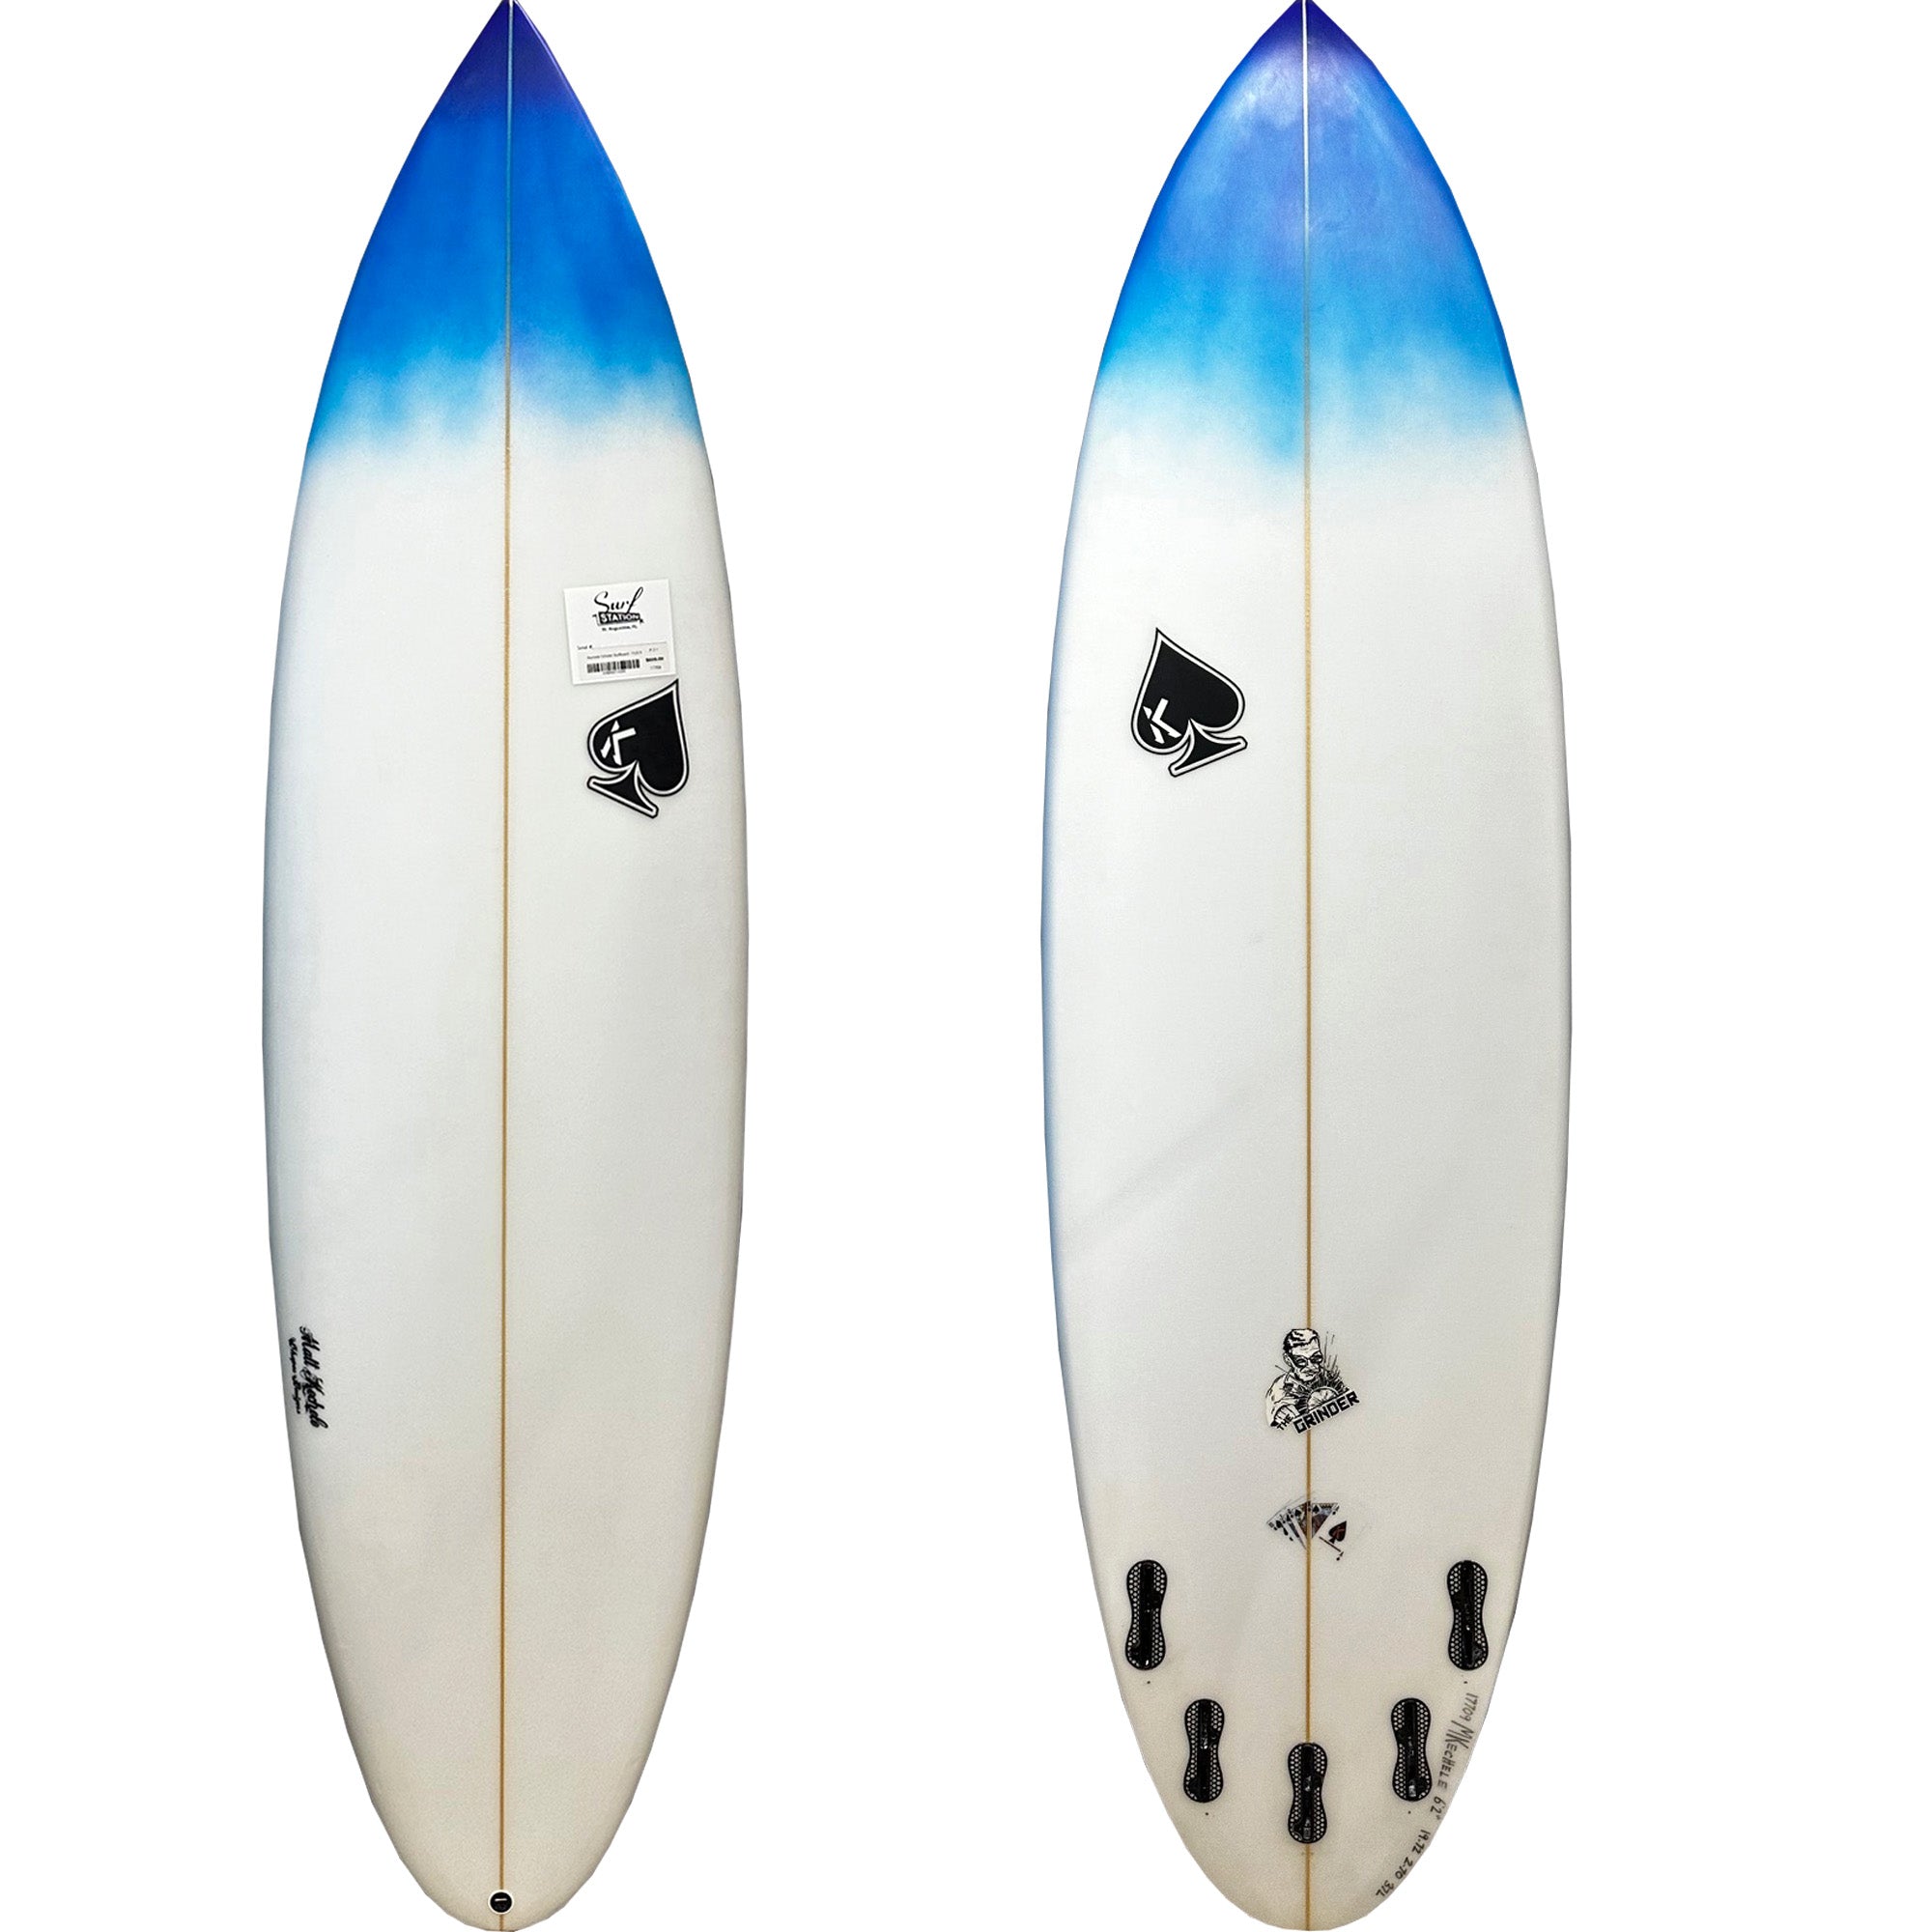 Kechele Grinder 6'2 Surfboard - FCS II